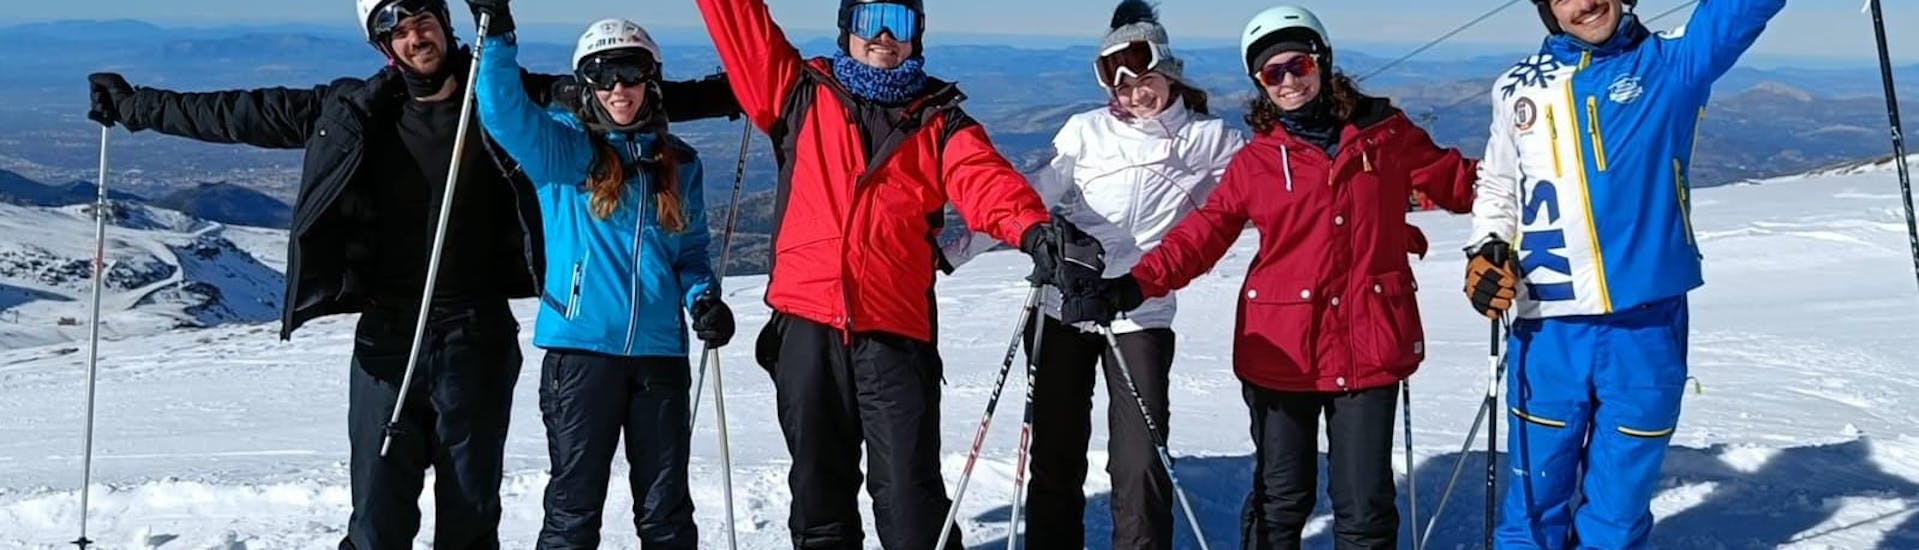 Privé skilessen voor volwassenen van alle niveaus (vanaf 13 jaar).